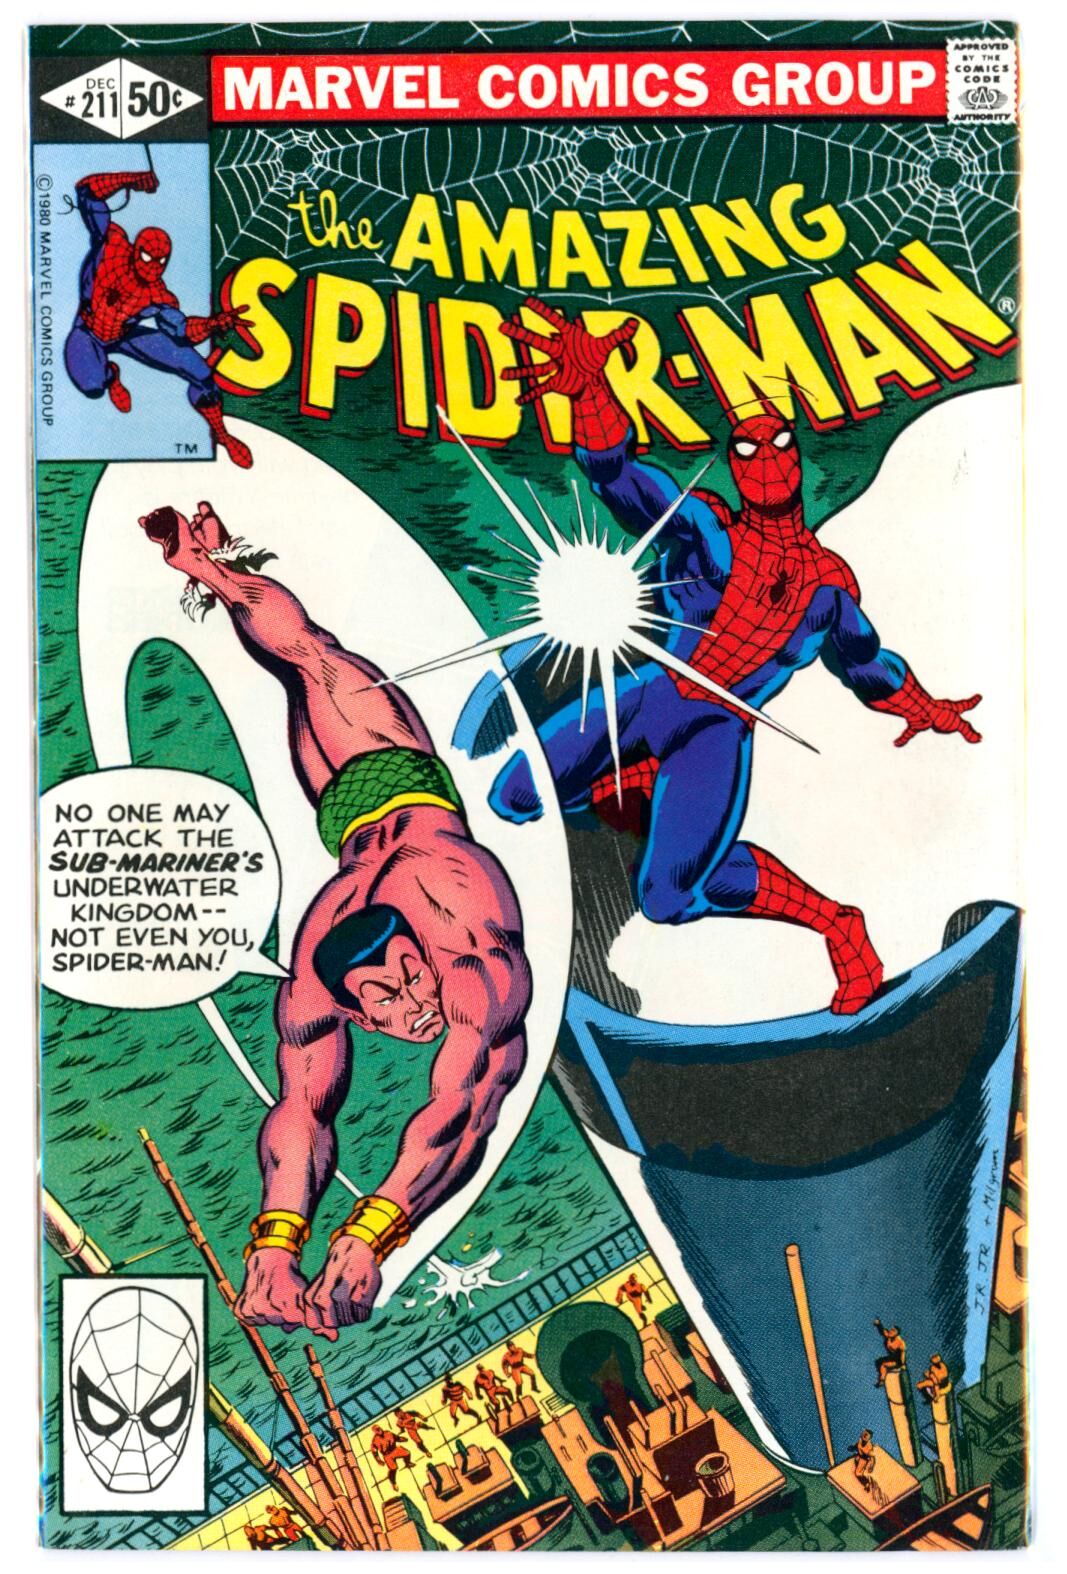 Amazing Spider-Man #211